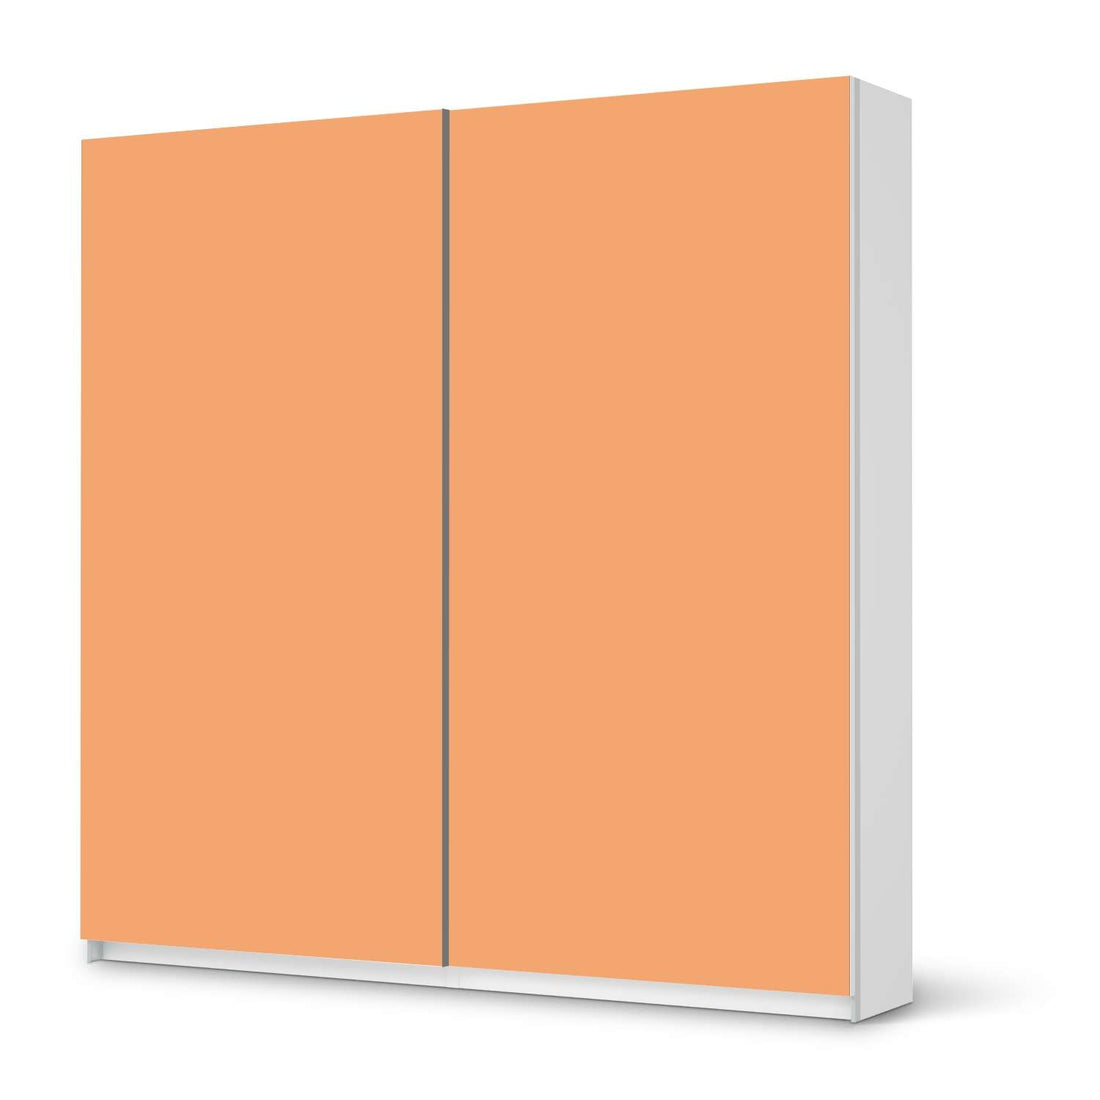 Möbel Klebefolie Orange Light - IKEA Pax Schrank 201 cm Höhe - Schiebetür - weiss